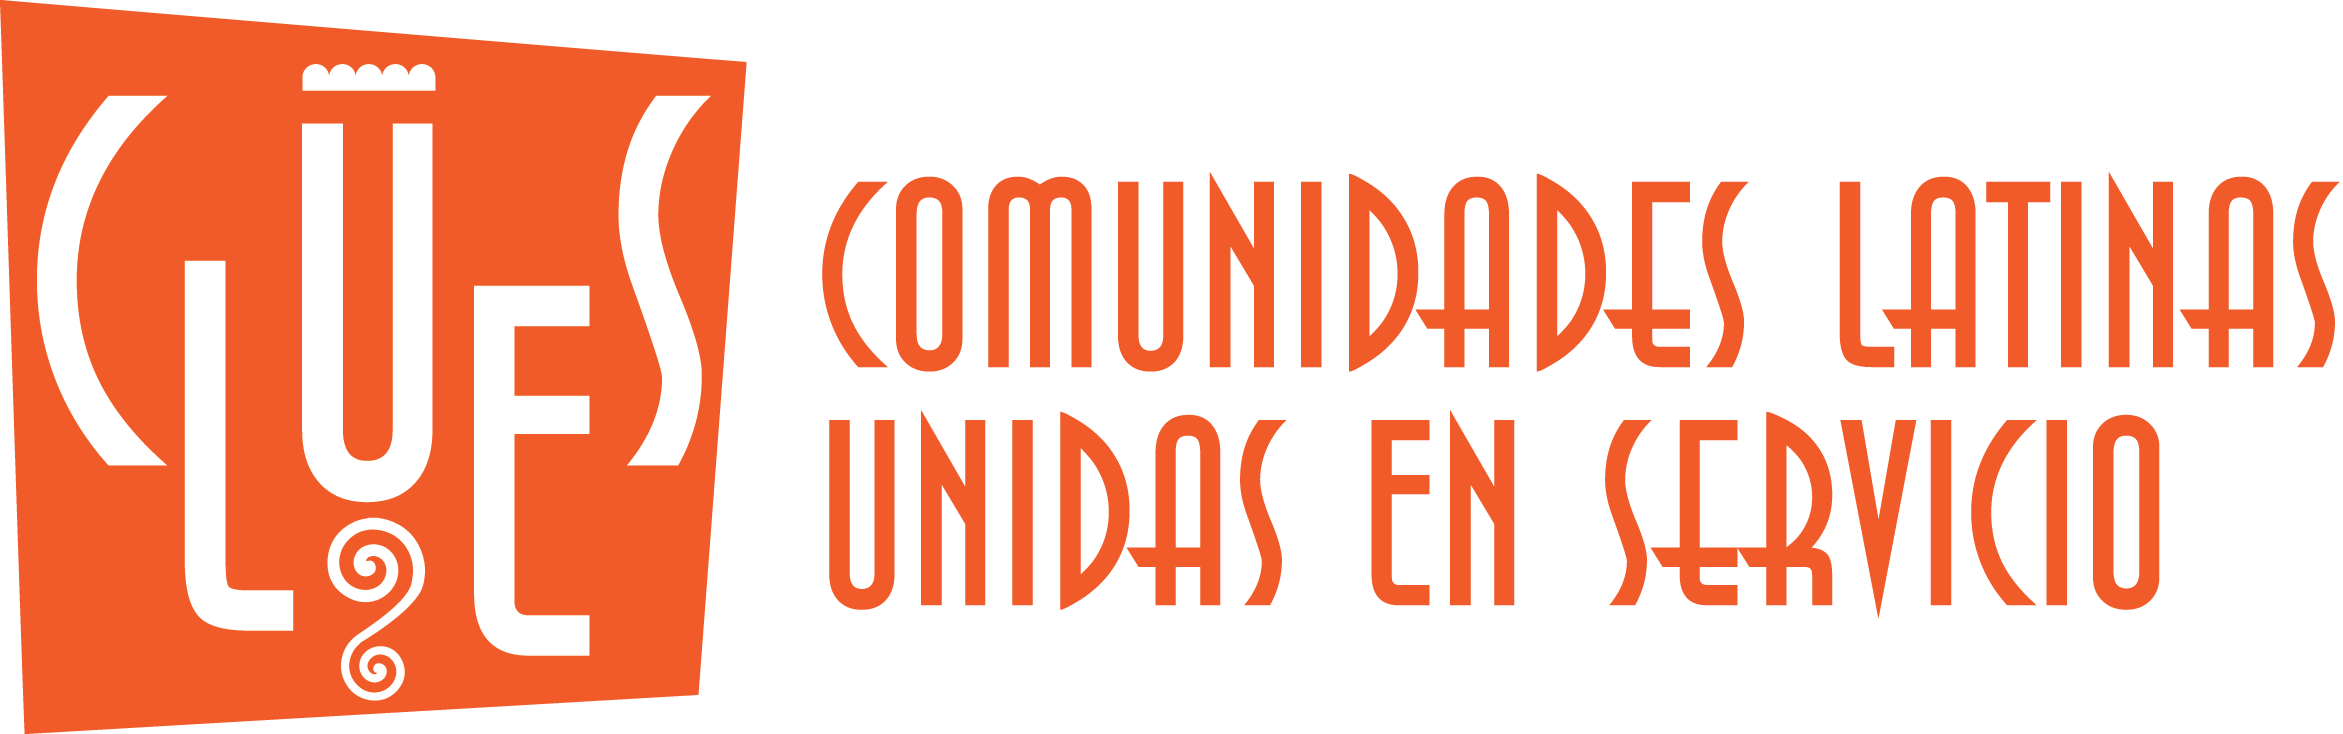 CLUES, Comunidades Latinas Unida en Servicio